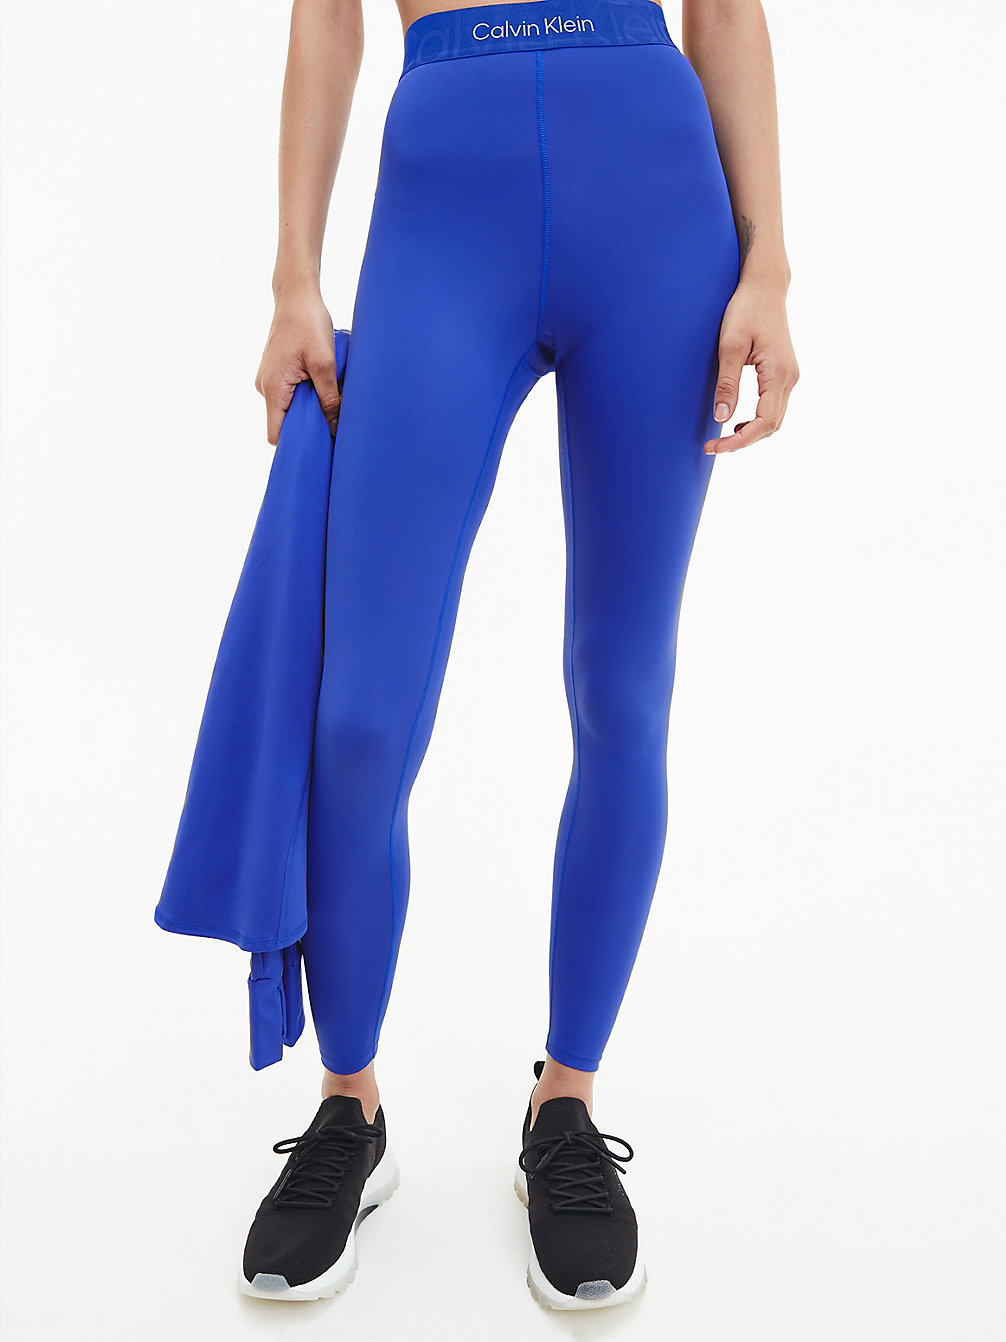 CLEMATIS BLUE > Спортивные леггинсы 7/8 из переработанного материала > undefined Женщины - Calvin Klein